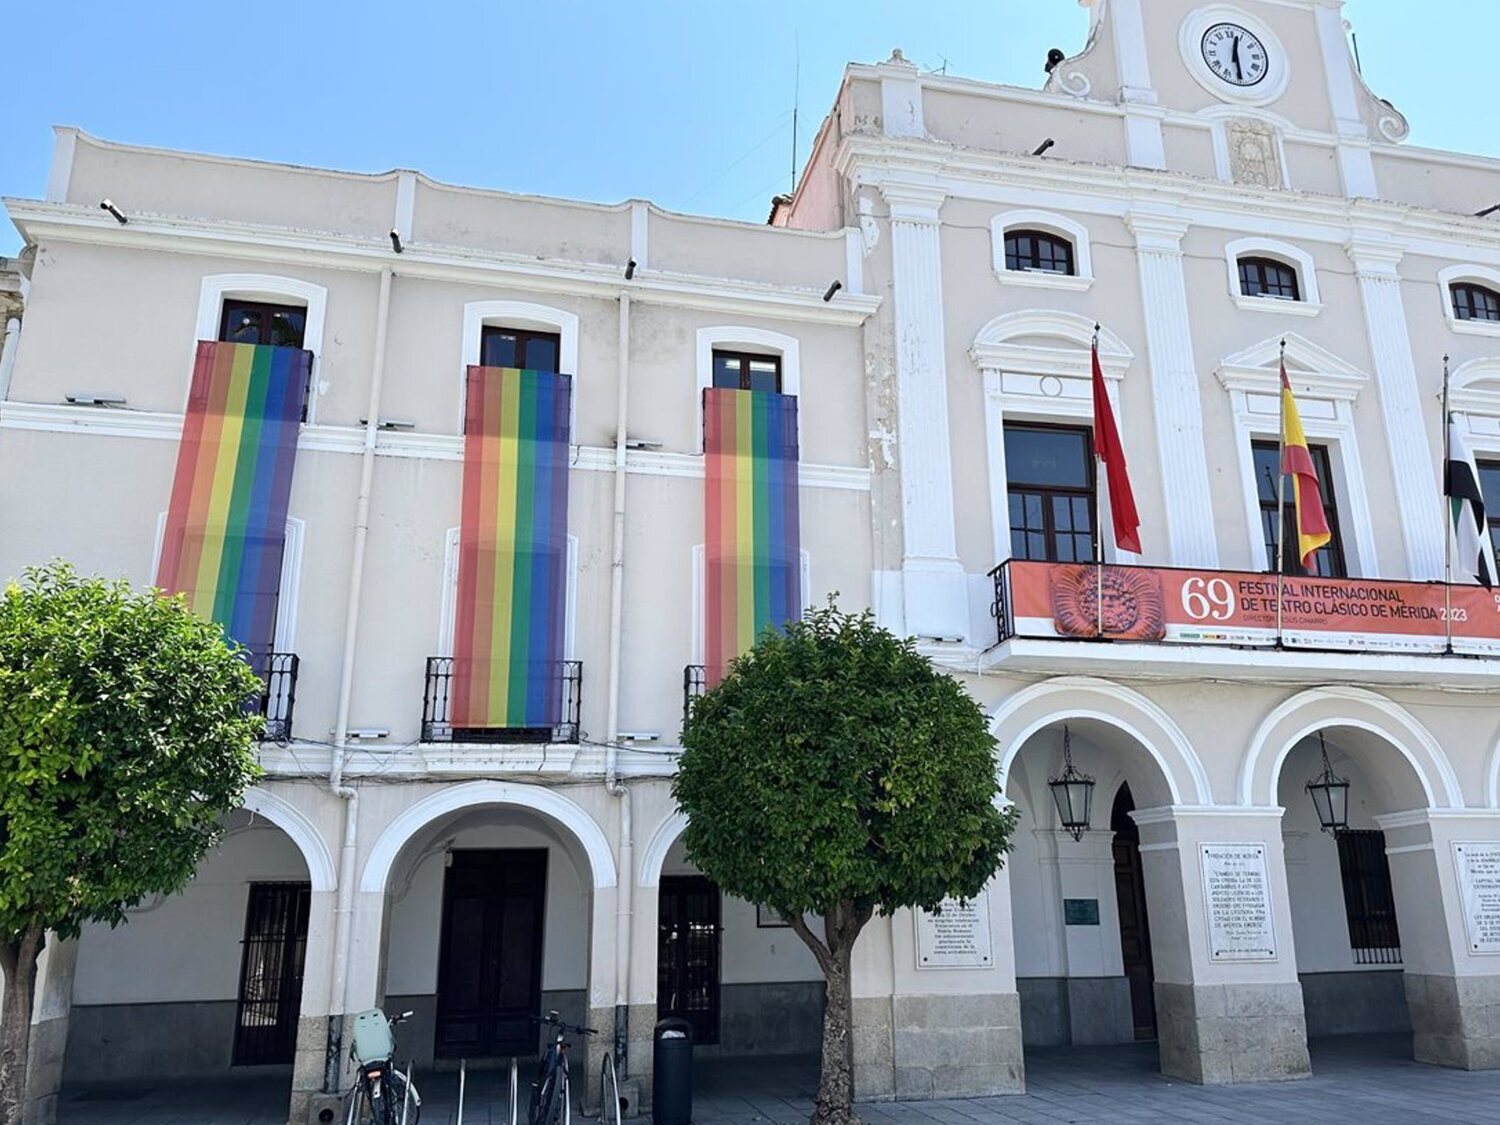 Edil de VOX en Mérida pide retirar la bandera LGTB y la equipara a la de "los pedófilos"